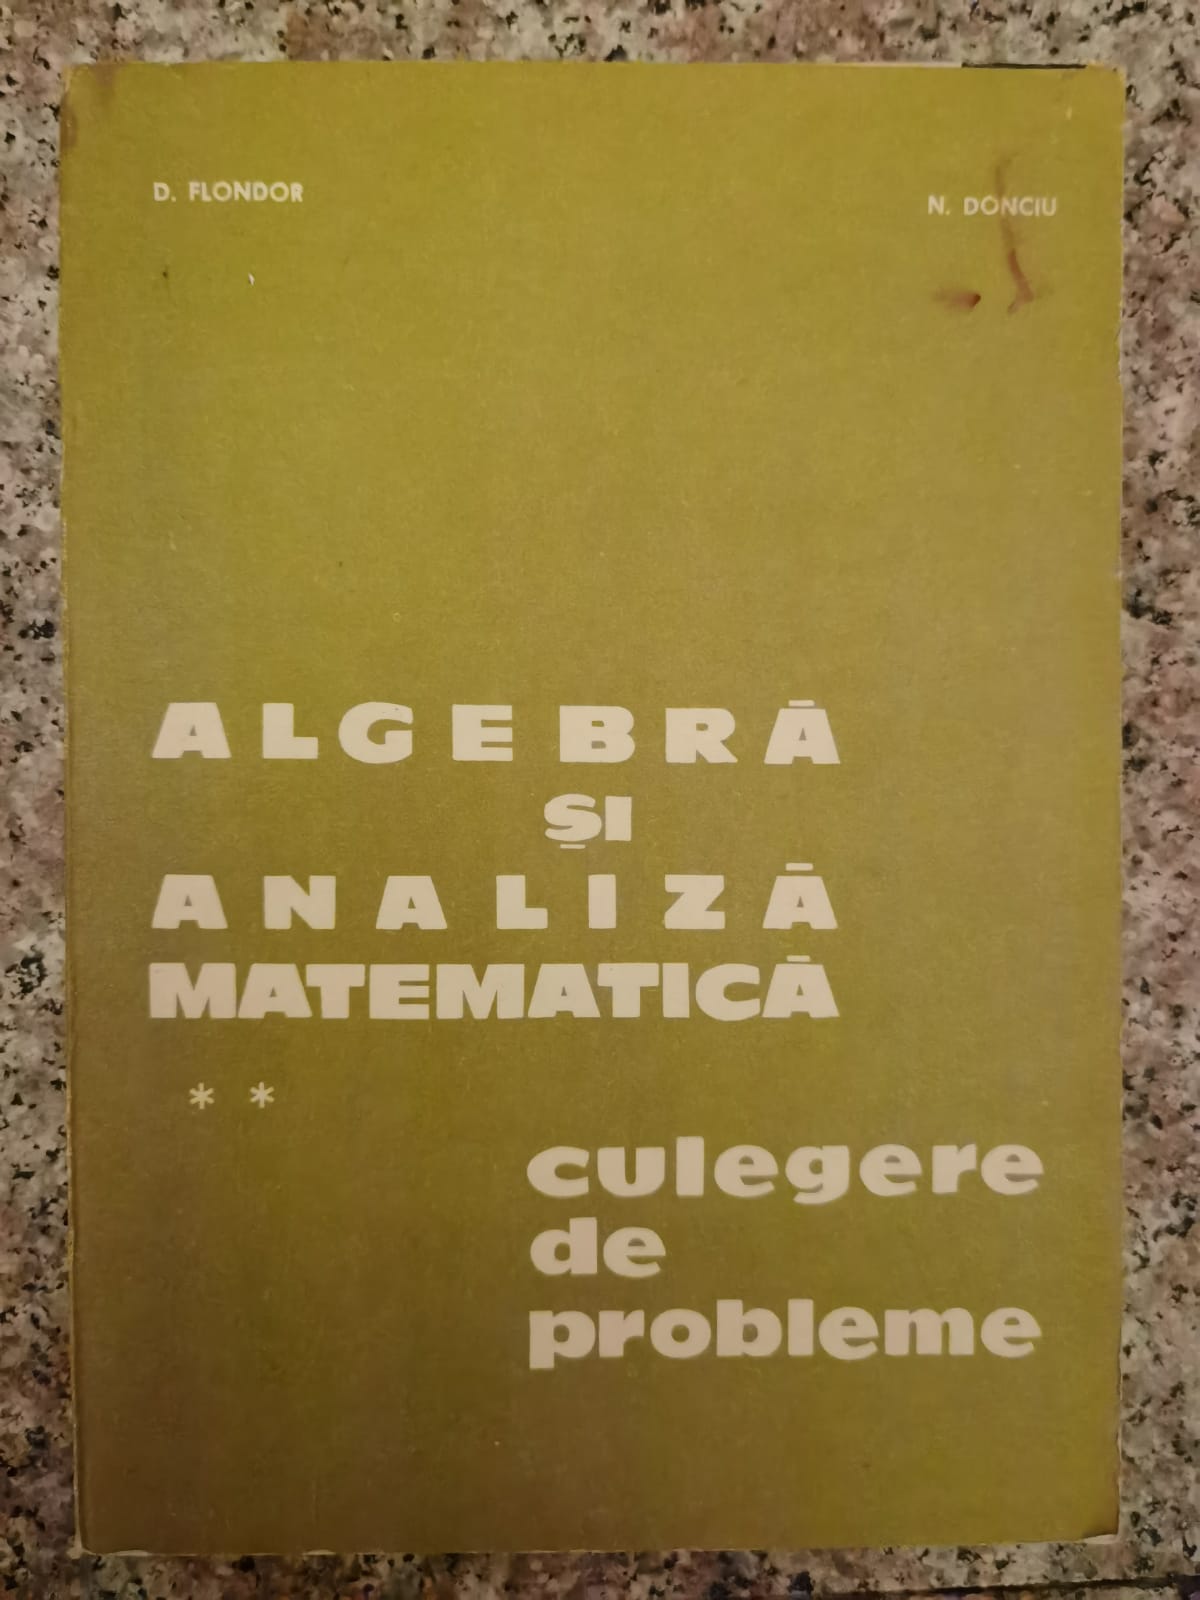 algebra si analiza matematica vol.2 culegere de probleme                                             d.flondor n.donciu                                                                                  